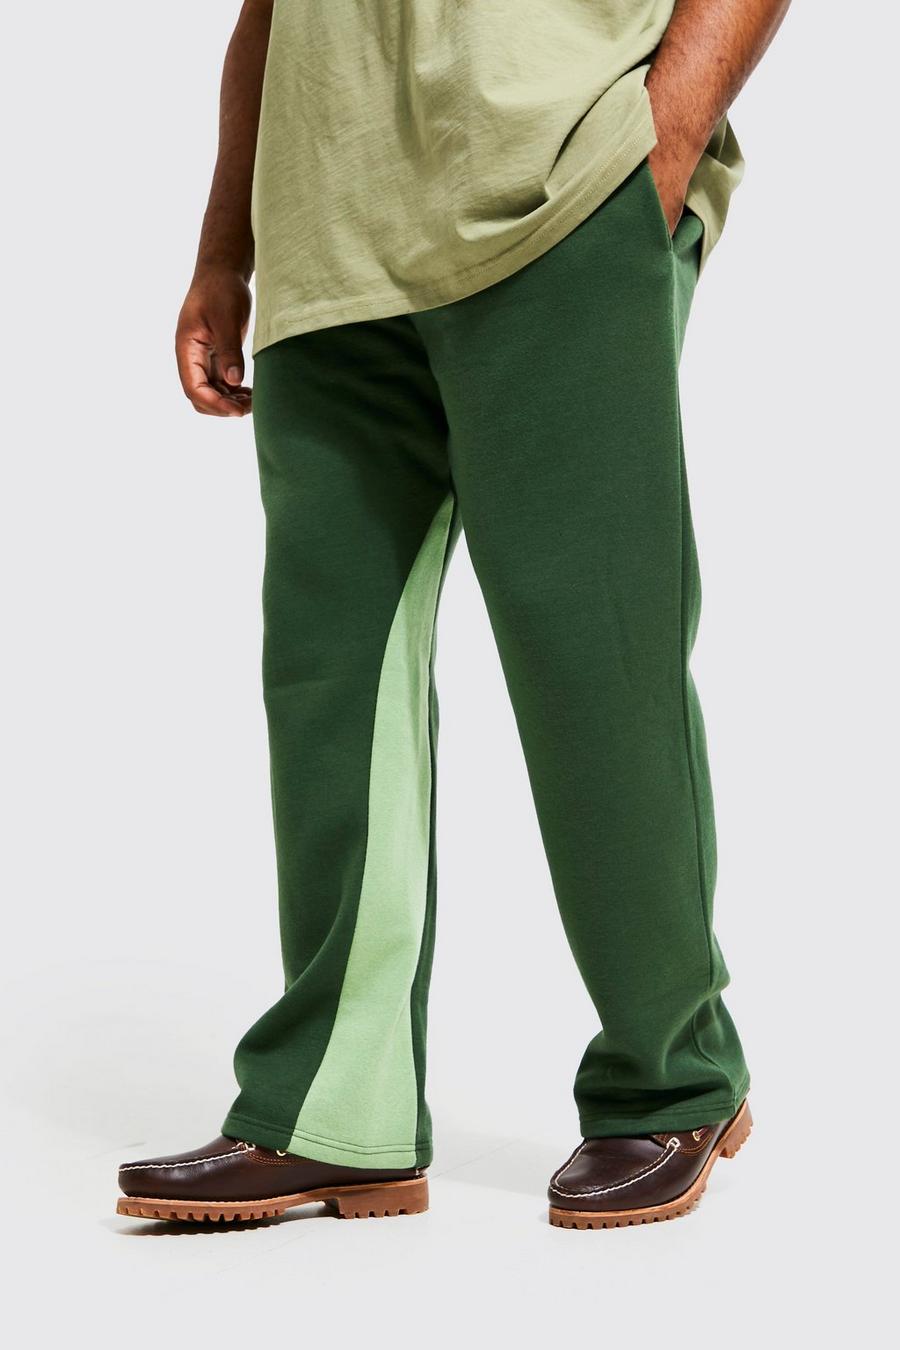 Pantalón deportivo Plus Regular con panel y refuerzo, Khaki kaki